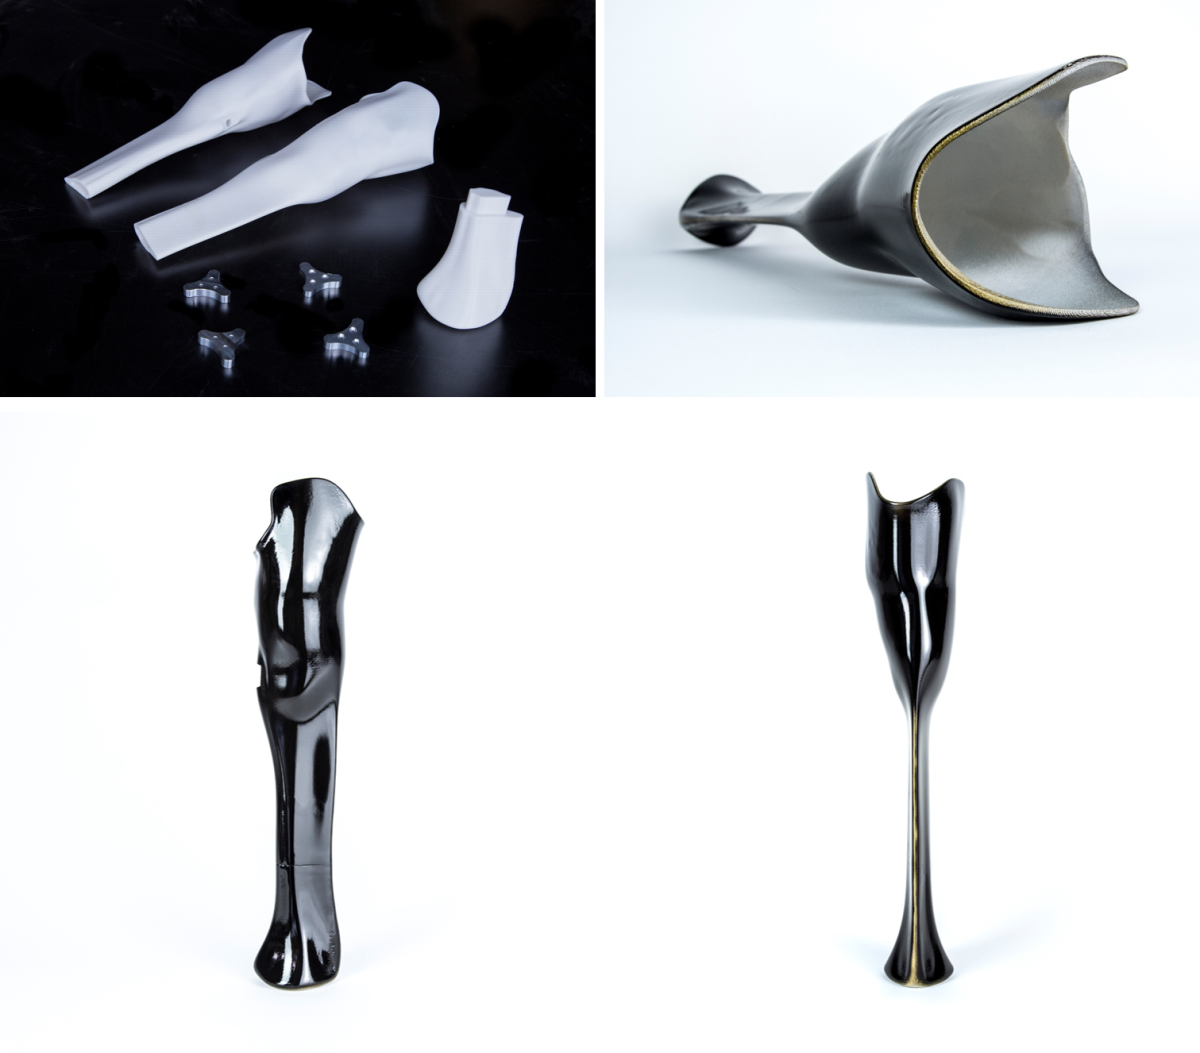 Pierna prostática diseñada para Denise Schindler, por Autodesk. Tomada de 3dprint.com